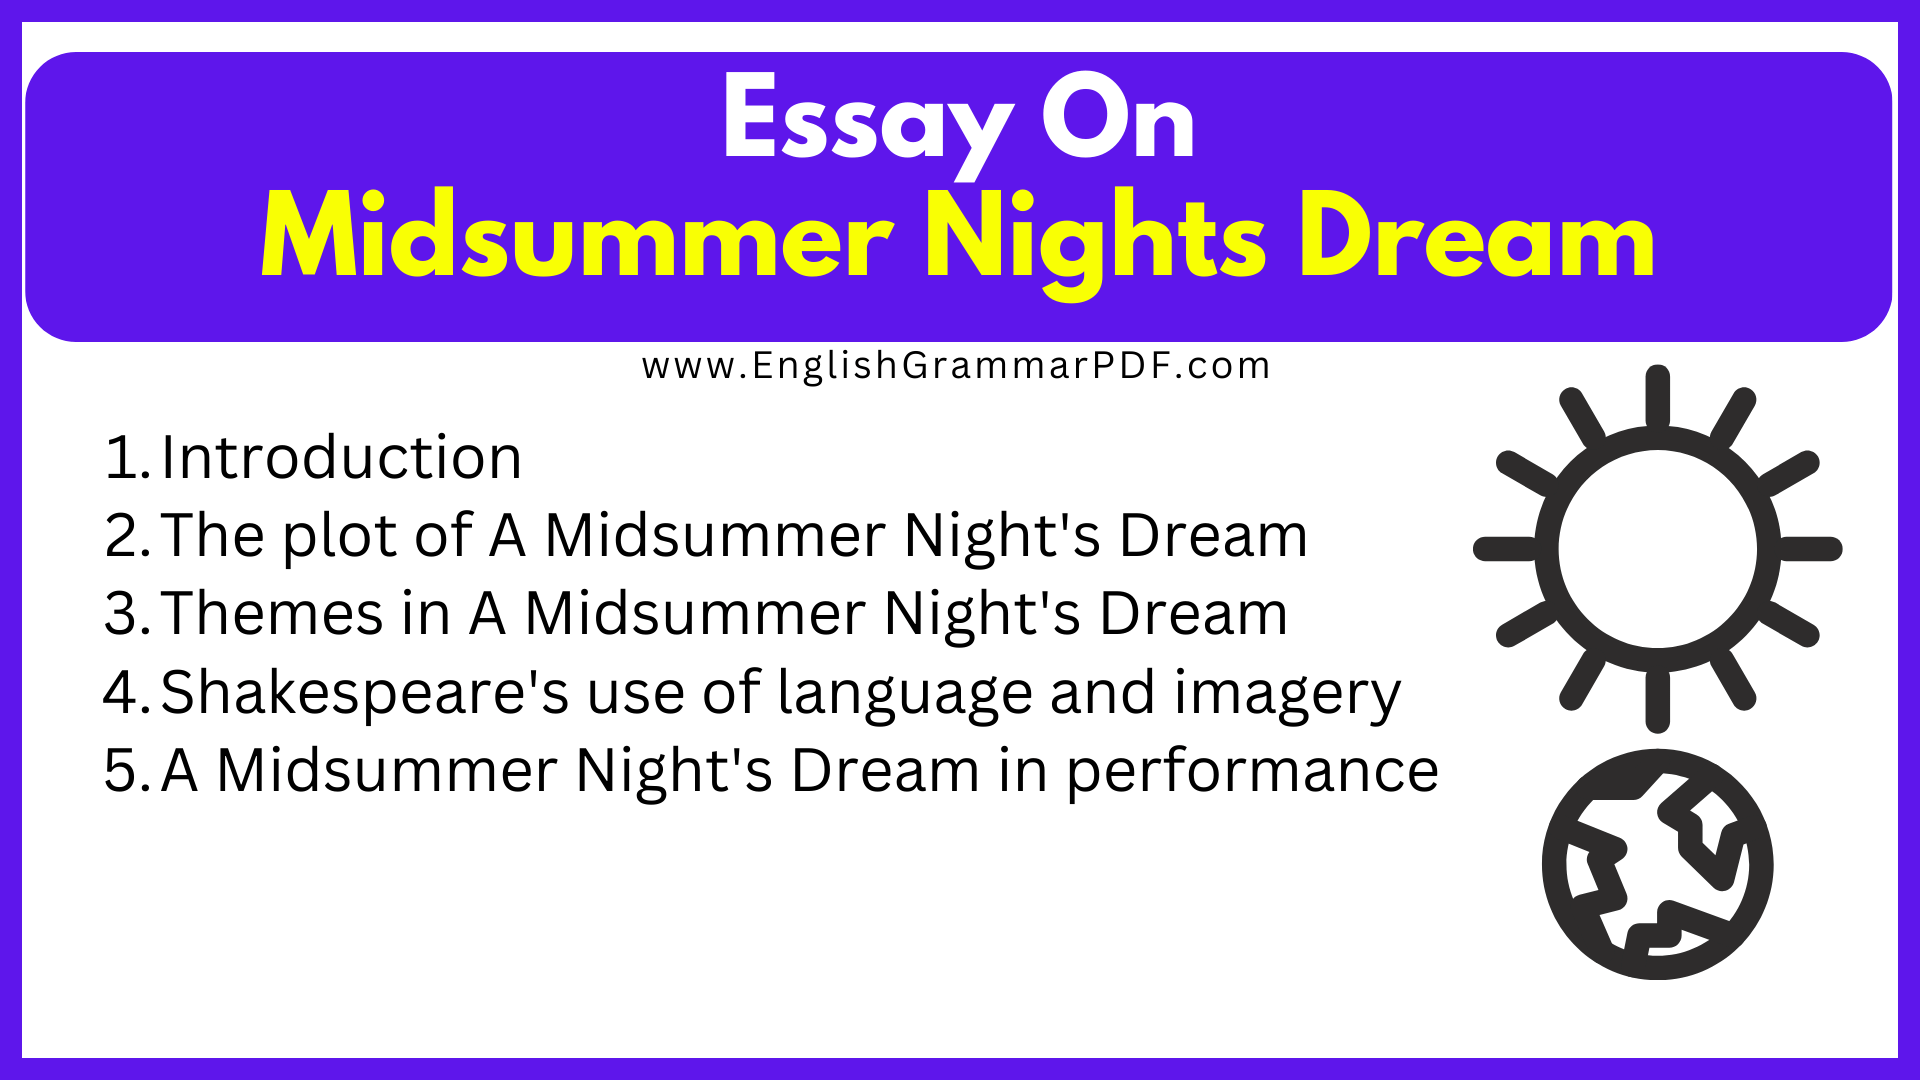 Essay On Midsummer Nights Dream